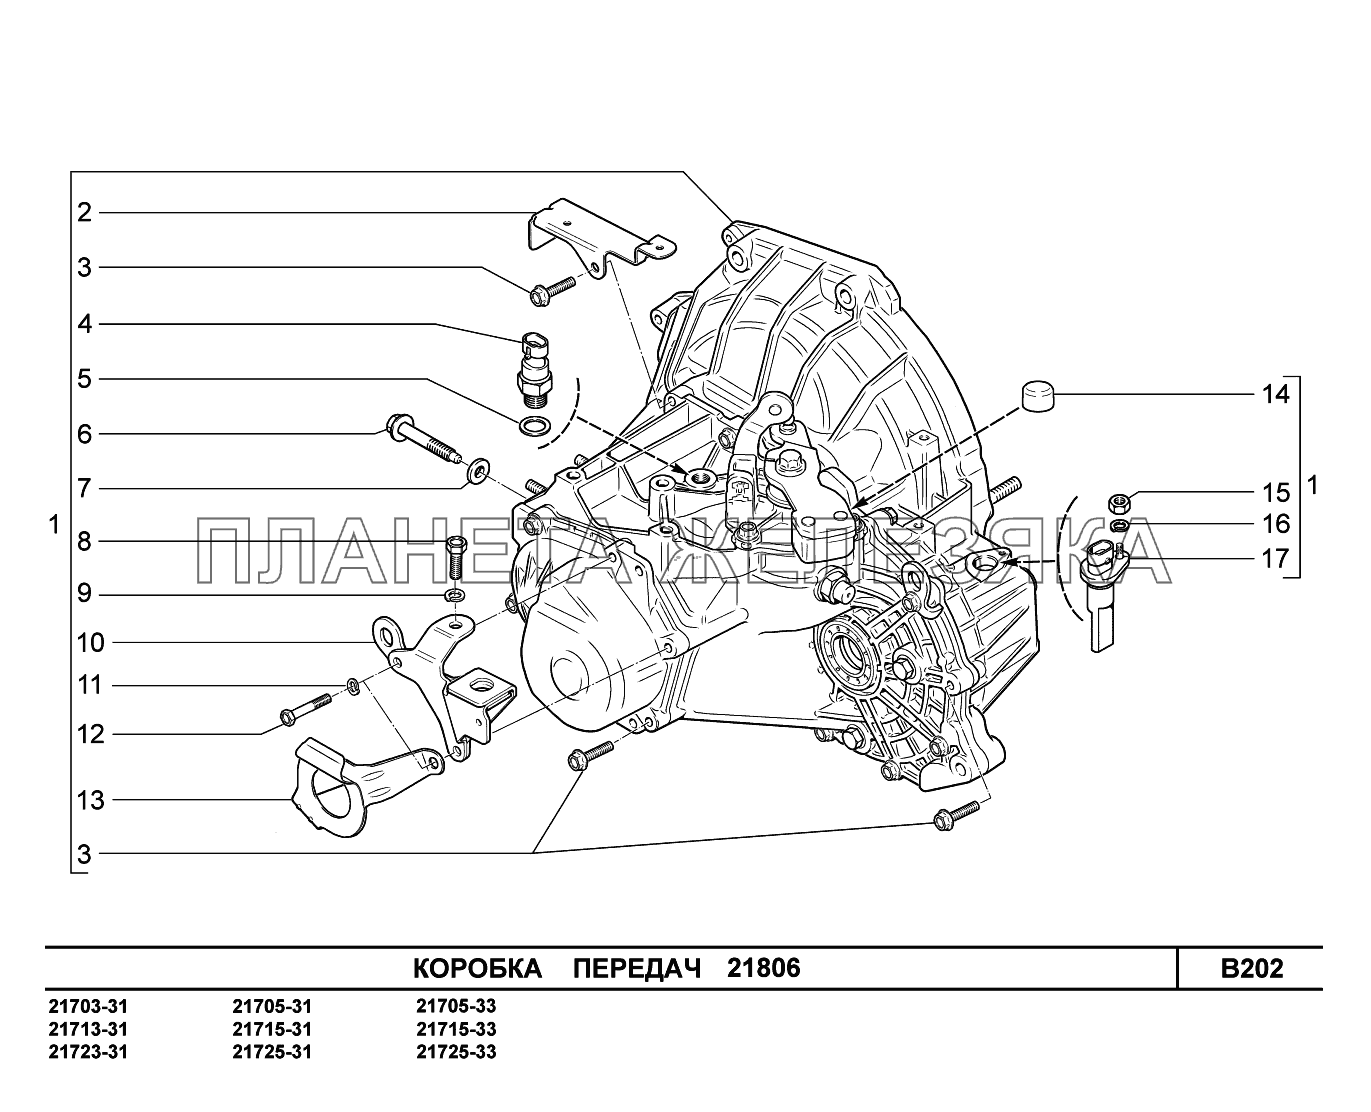 B202. Коробка передач ВАЗ-2170 